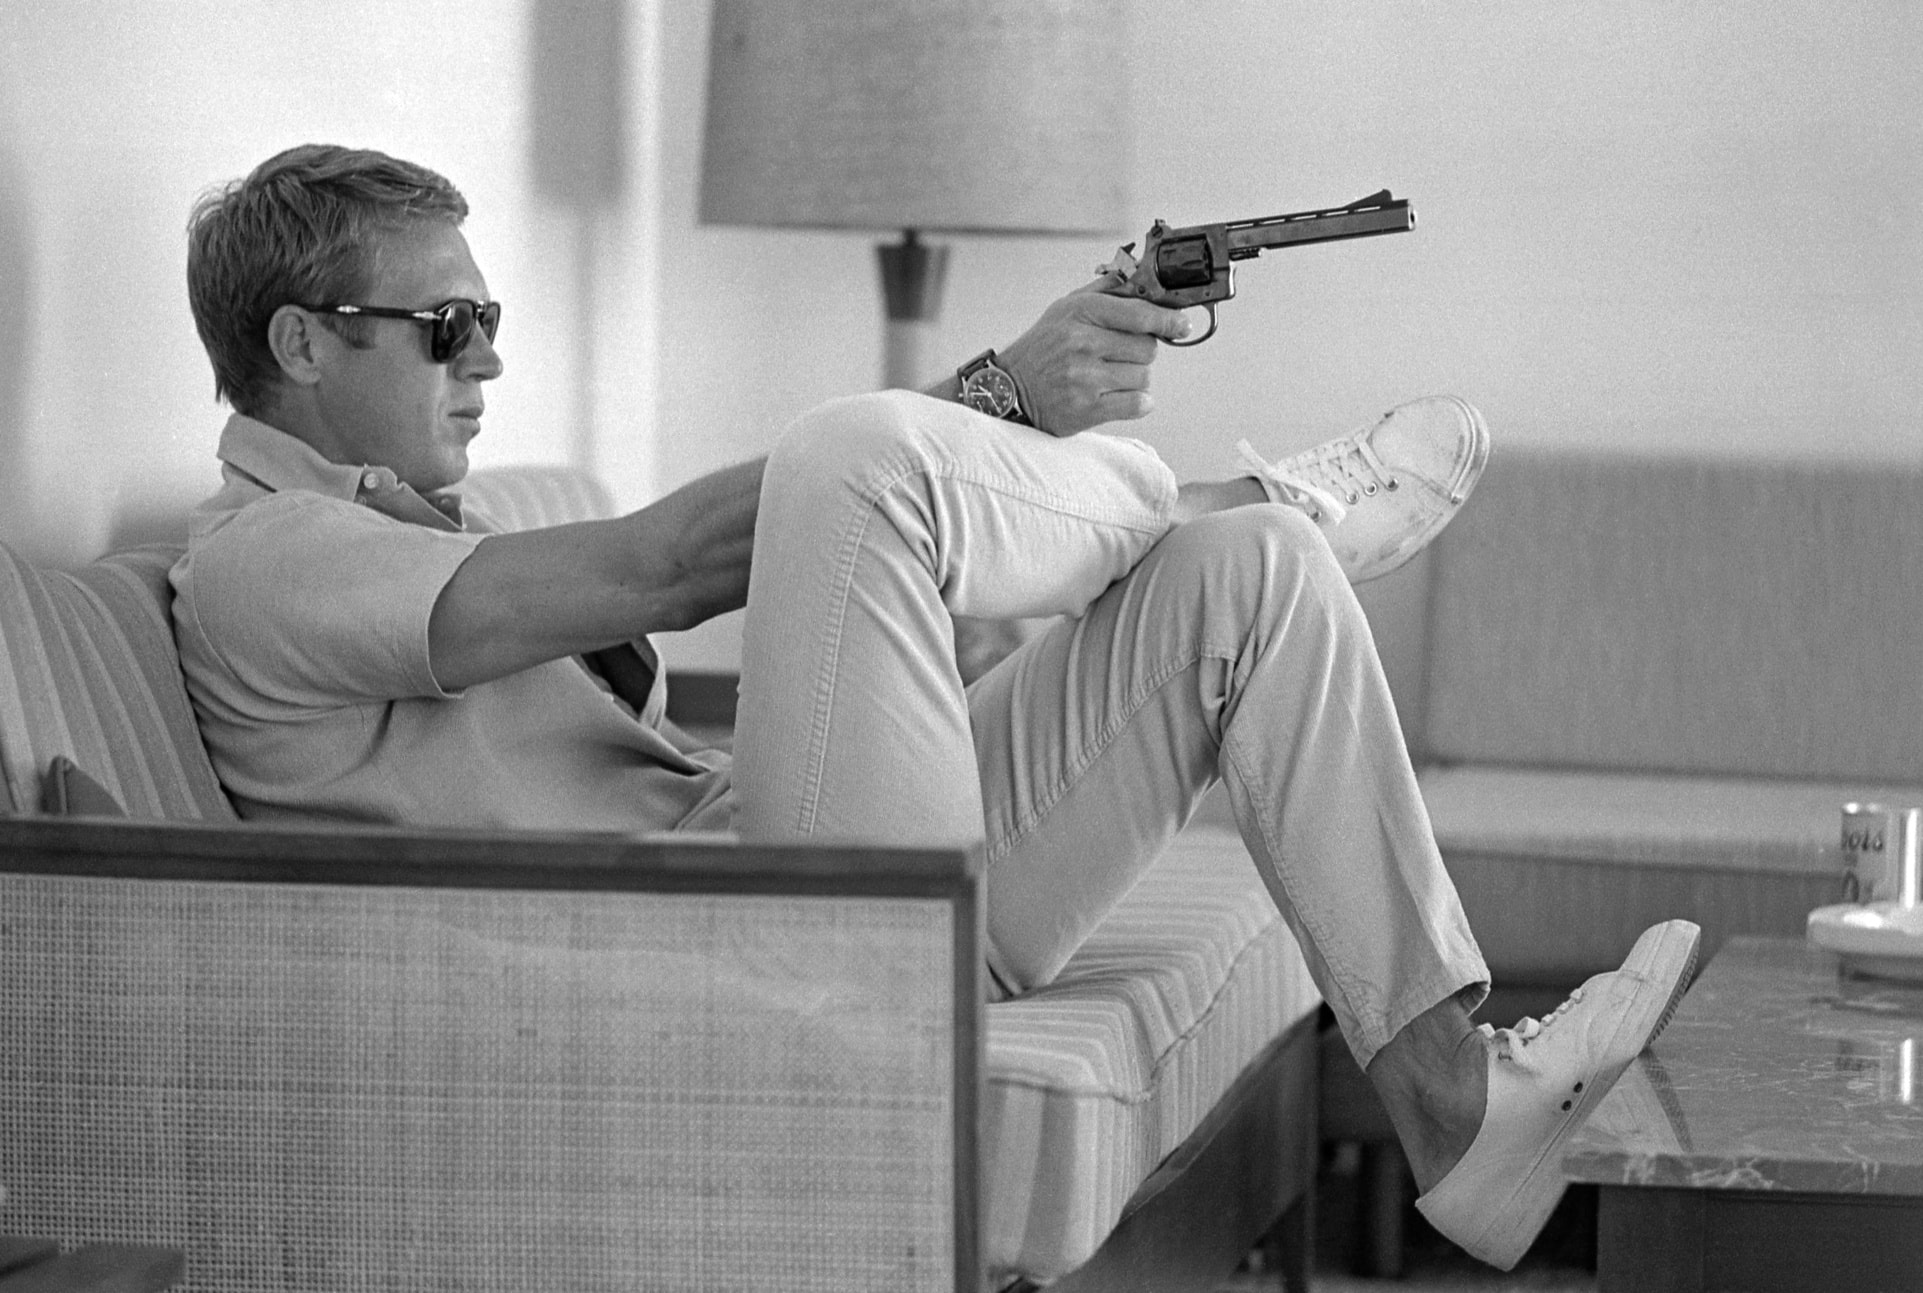 Steve McQueen in 1963, LIFE photographer John Dominis